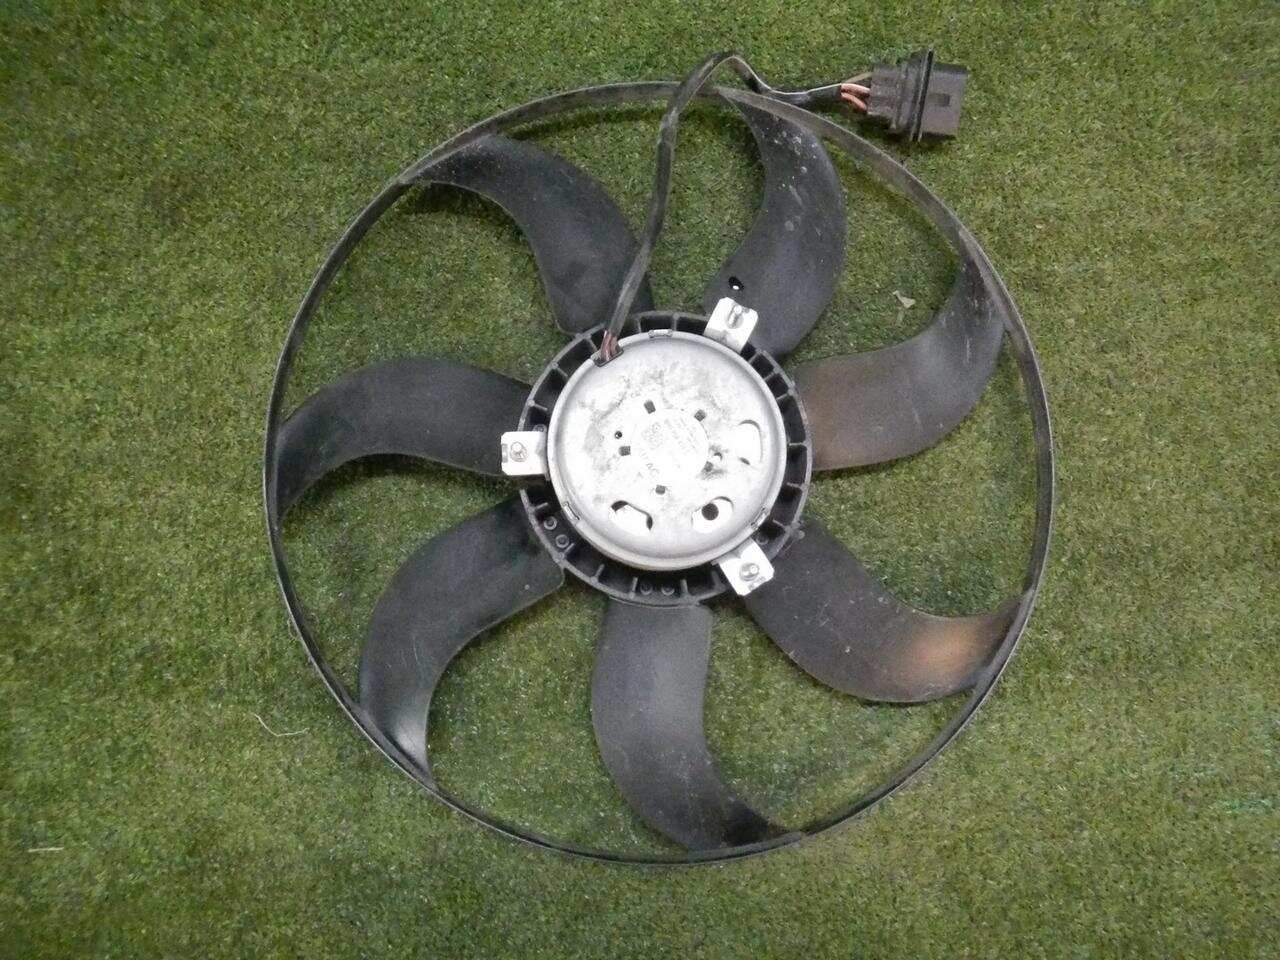 Вентилятор радиатора VW POLO SEDAN (2010-2015) 6R0959455E 0000004885320